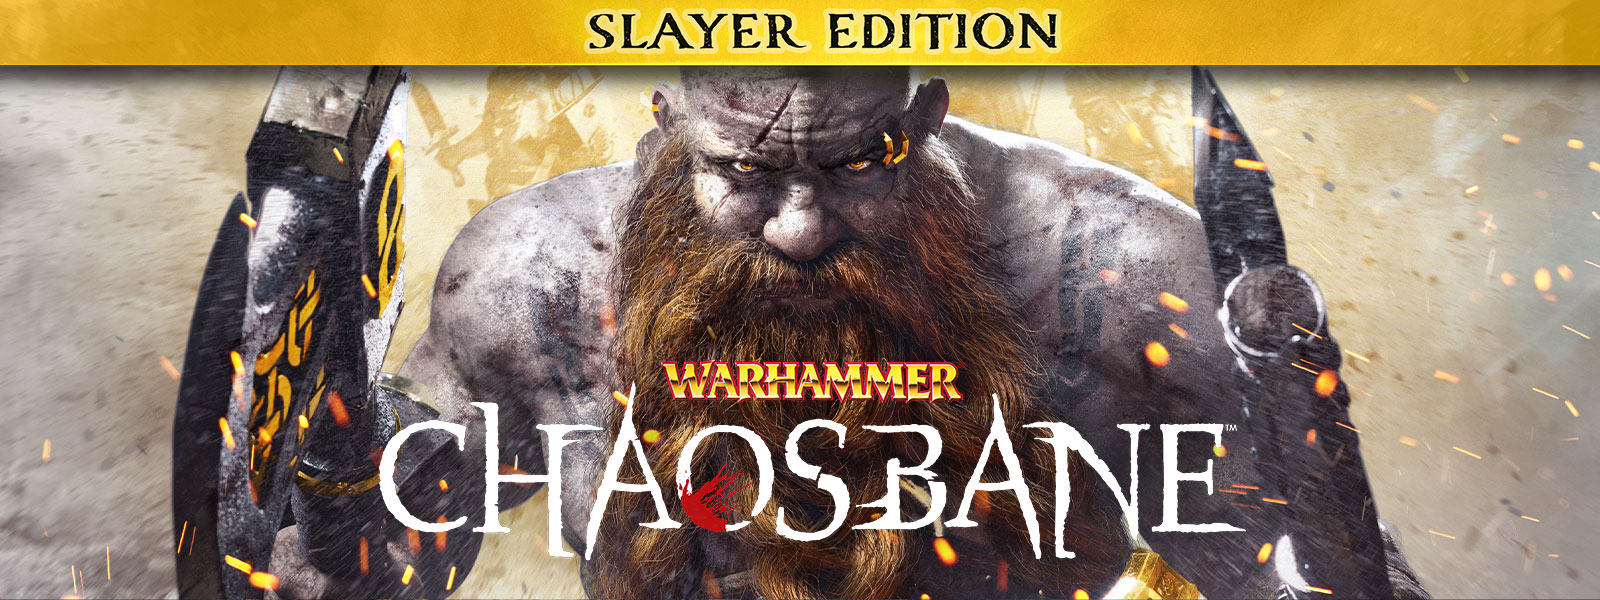 Warhammer: Chaosbane, Slayer Edition, Un hombre barbudo camina a través de chispas de fuego, llevando un hacha en cada mano.